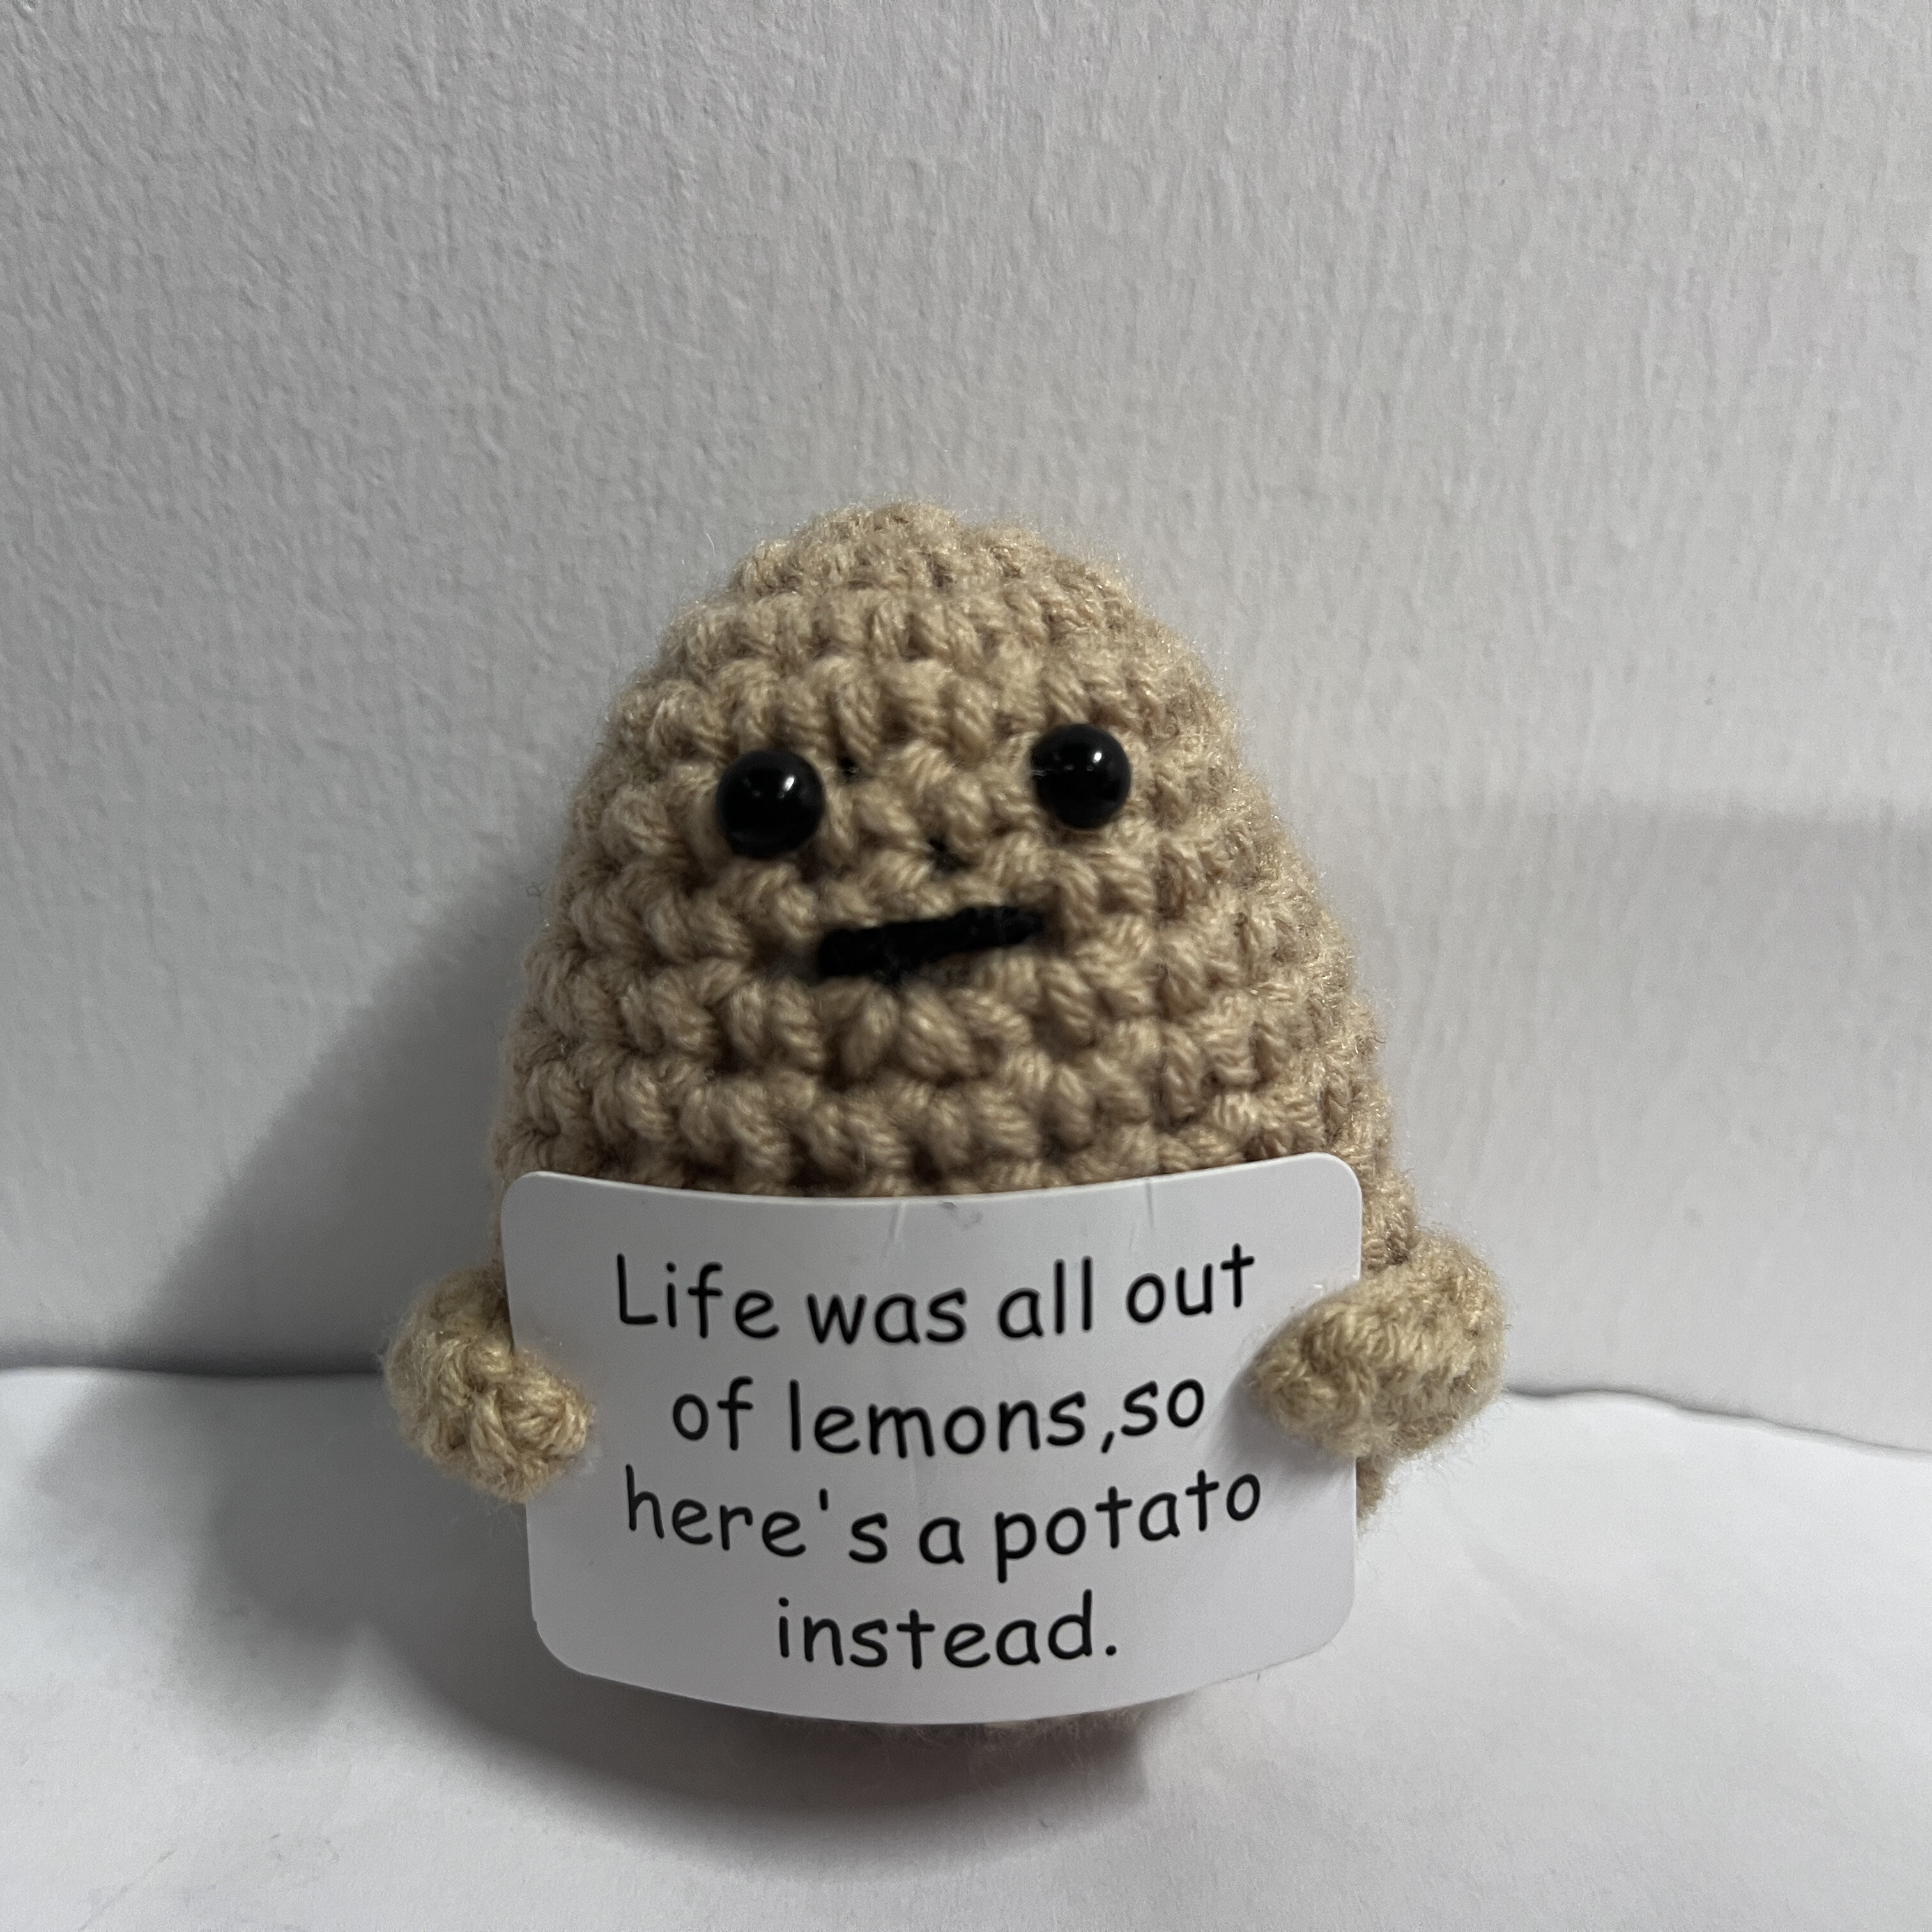 Funny Crochet Positive Potato Partner Positivity Affirmation - Temu New  Zealand